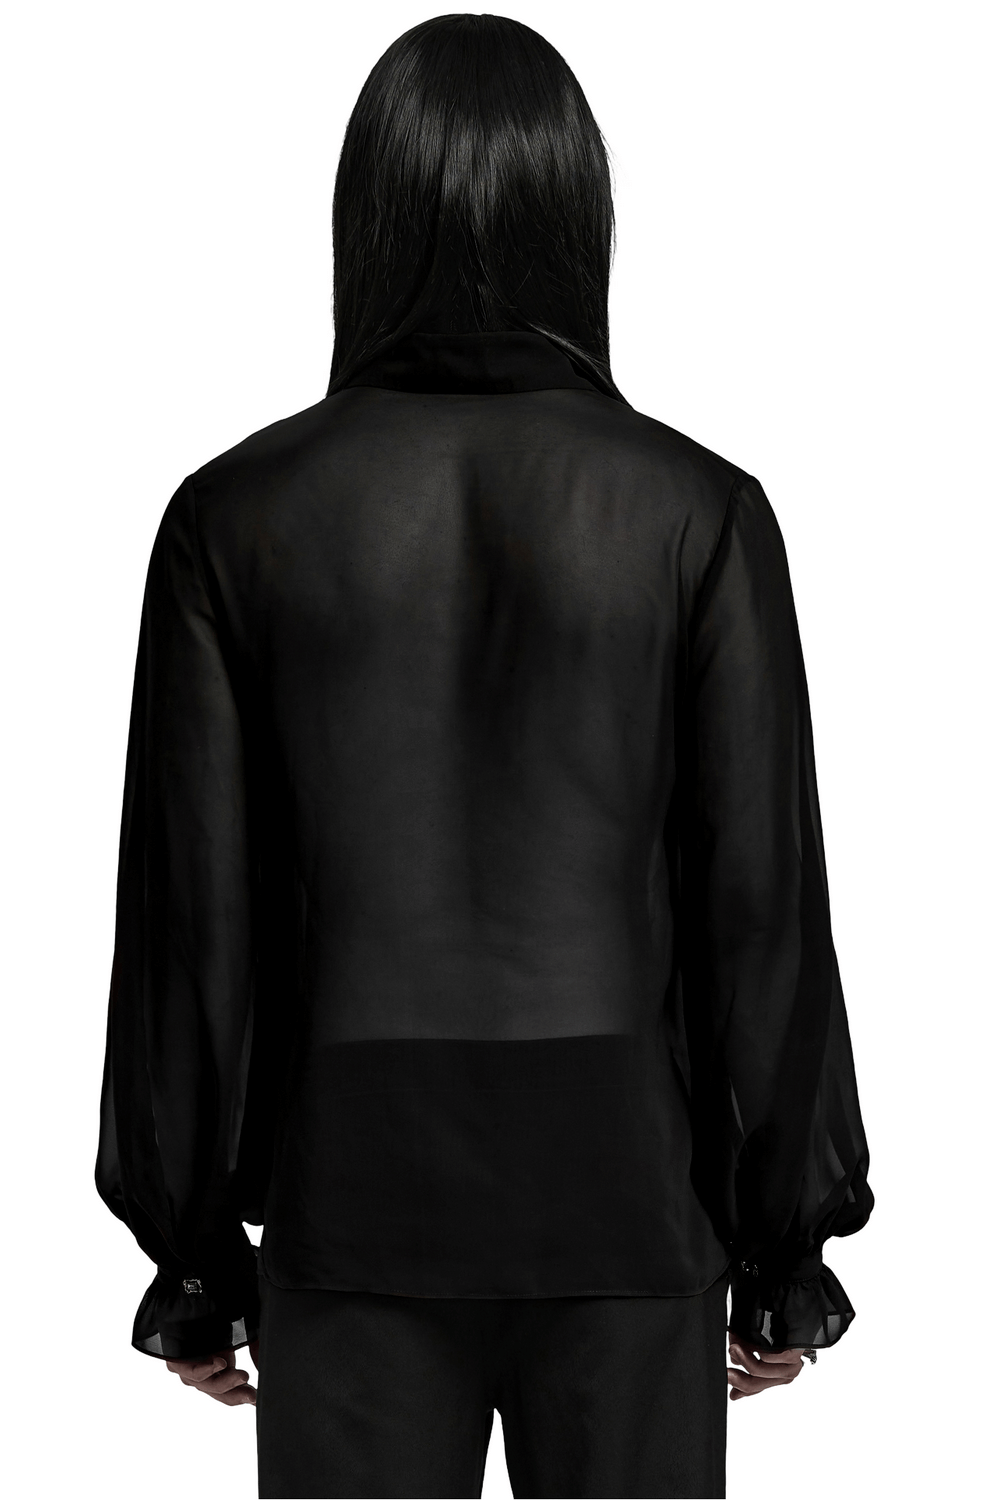 Chemise gothique pour hommes : mousseline transparente avec lacets sur le devant